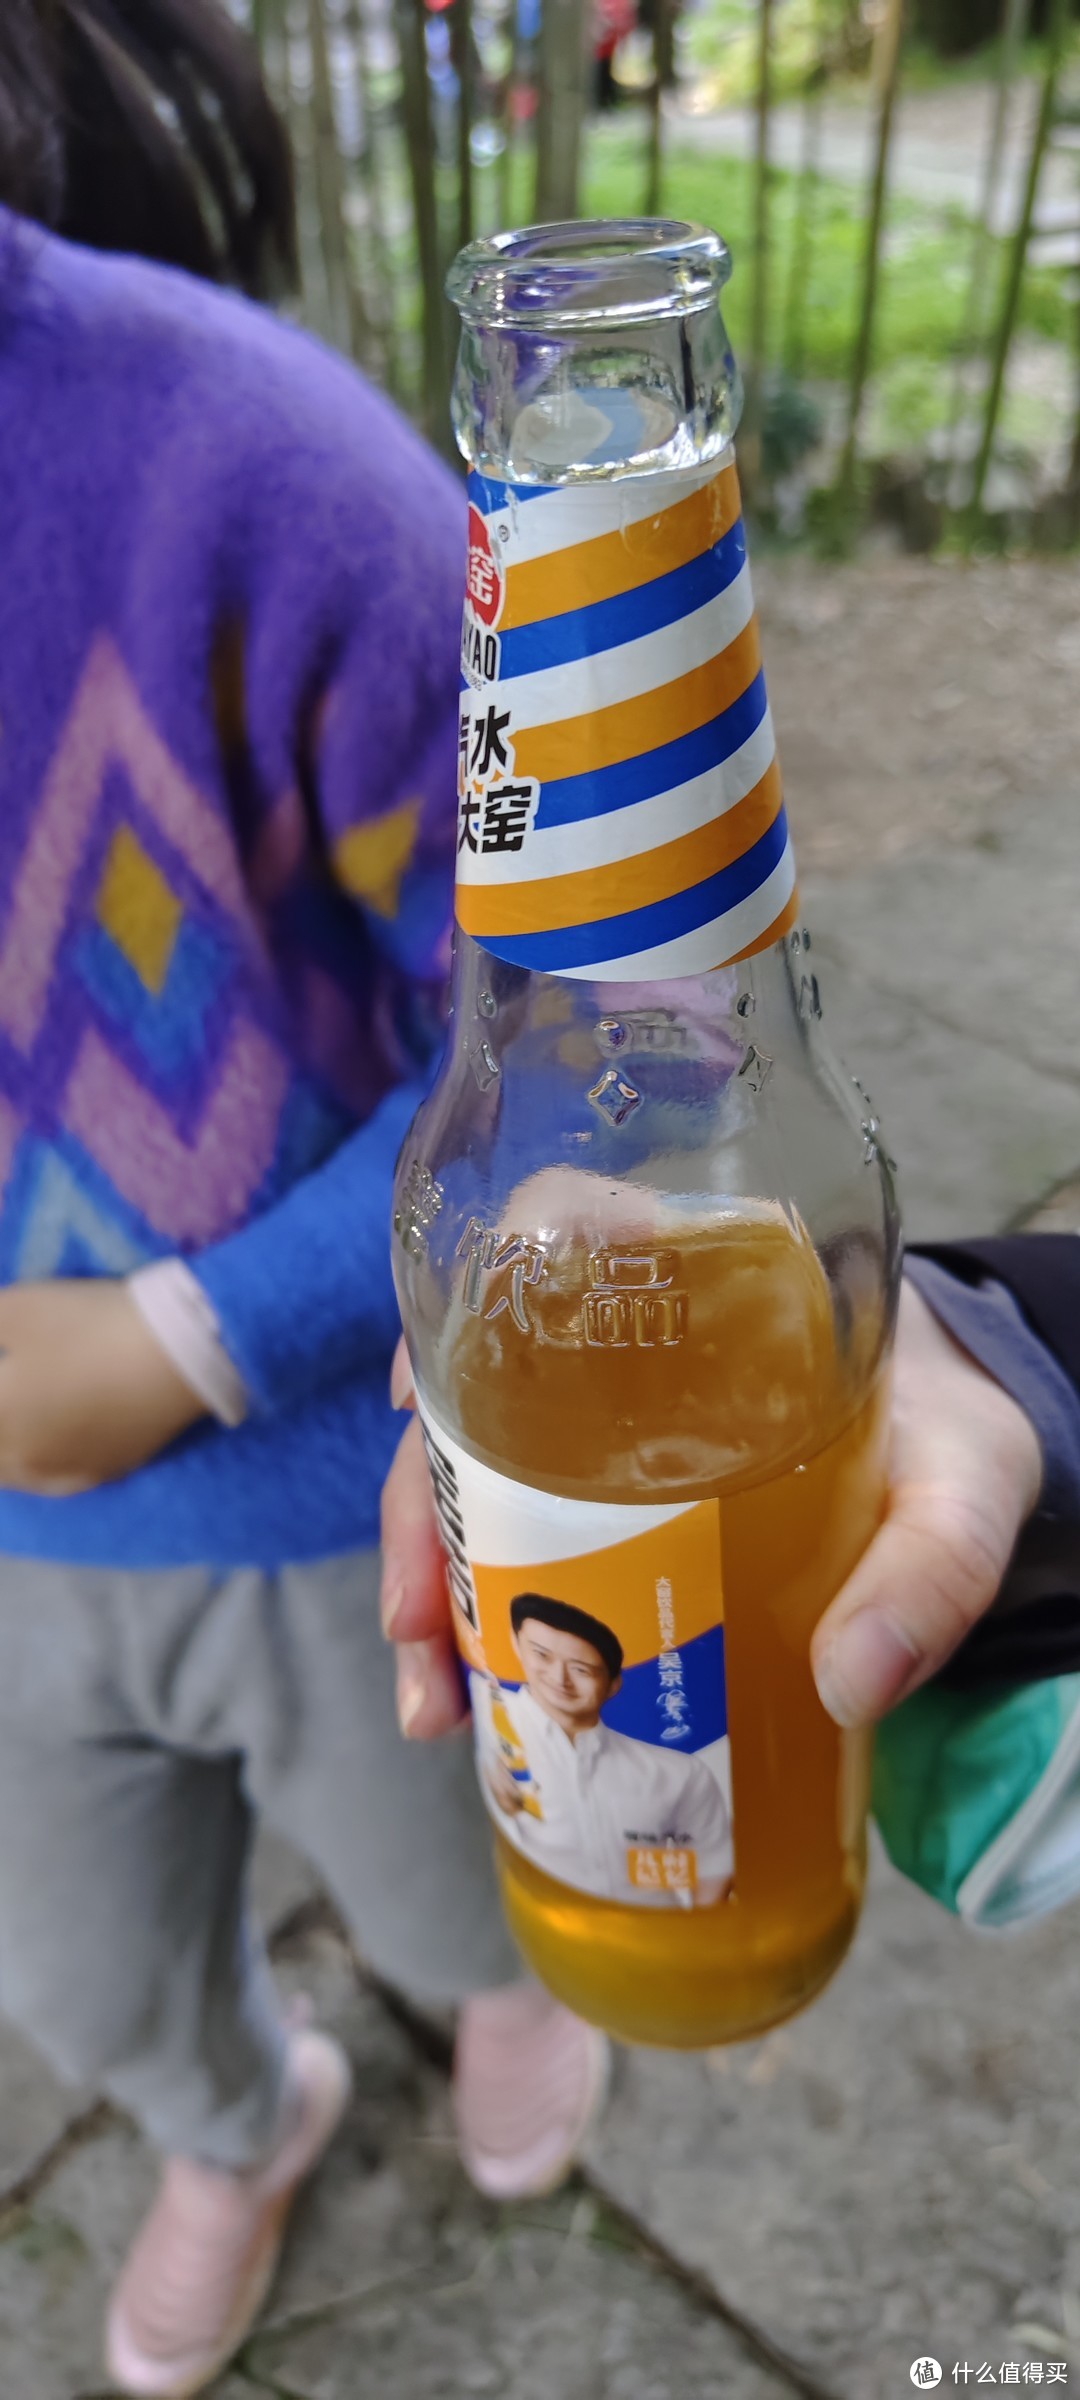 一瓶饮料/大窑橙诺 橙汁味汽水 碳酸饮料/健力宝/纤维+橙蜜味无糖0糖0脂运动